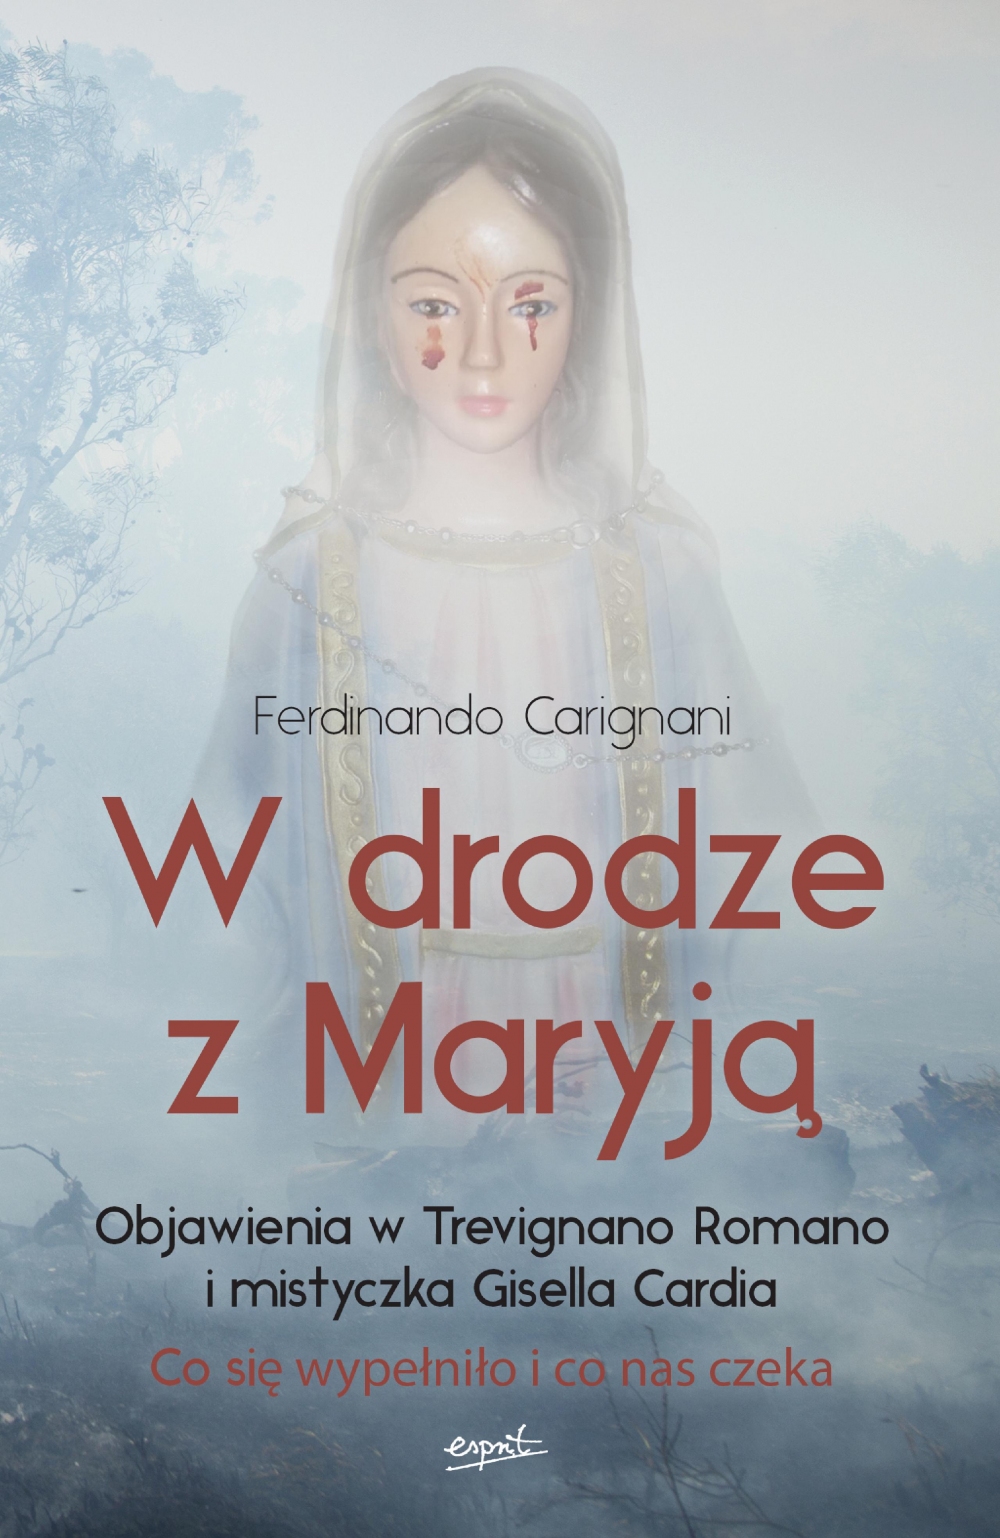 Przesłania z Trevignano Romano,objawienia Maryjne,przepowiednie, koniec świata, czasy ostateczne